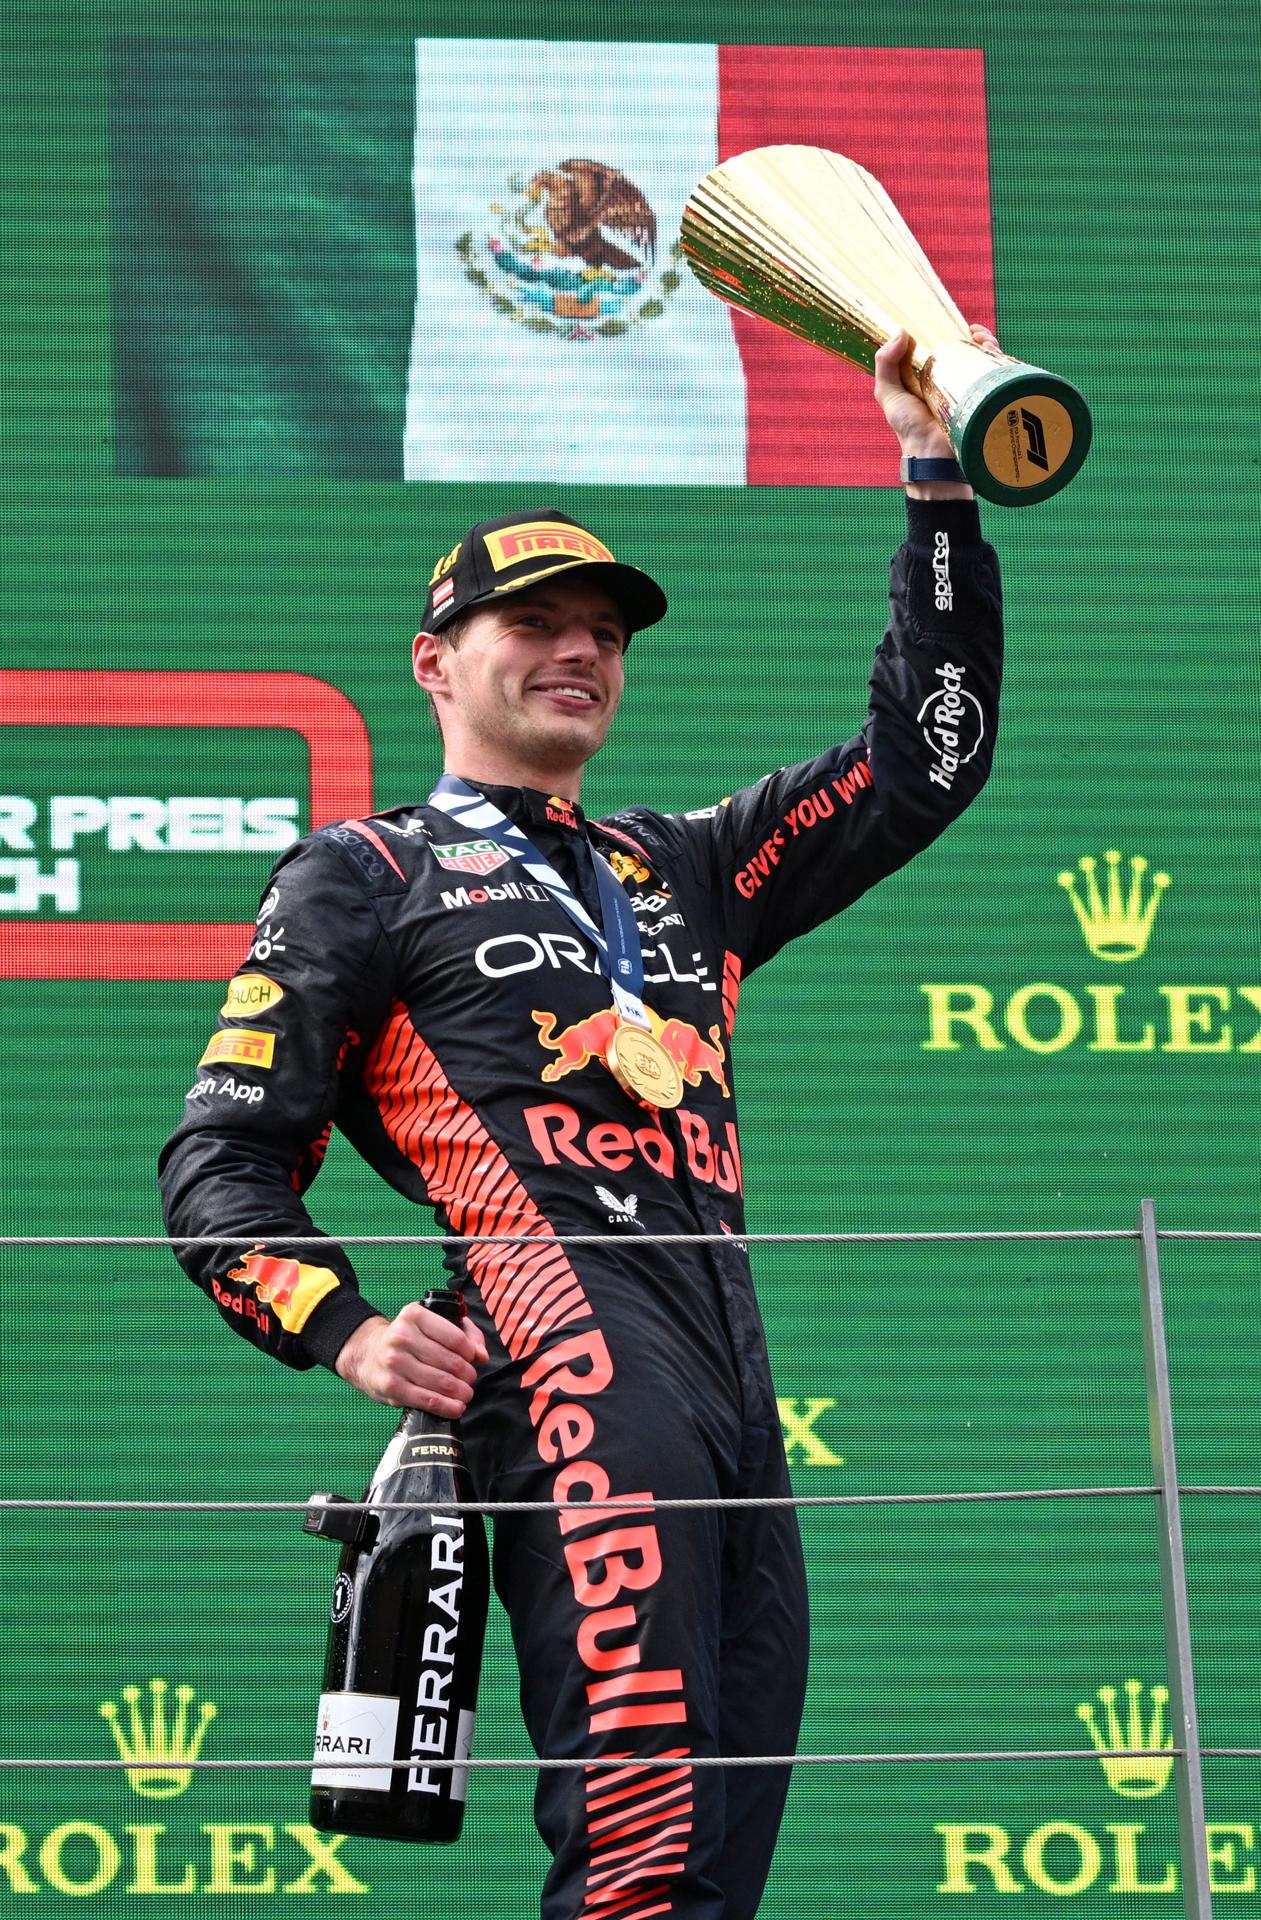 Max Verstappen culmina su dominio en el GP de Austria por delante de un Leclerc protegido